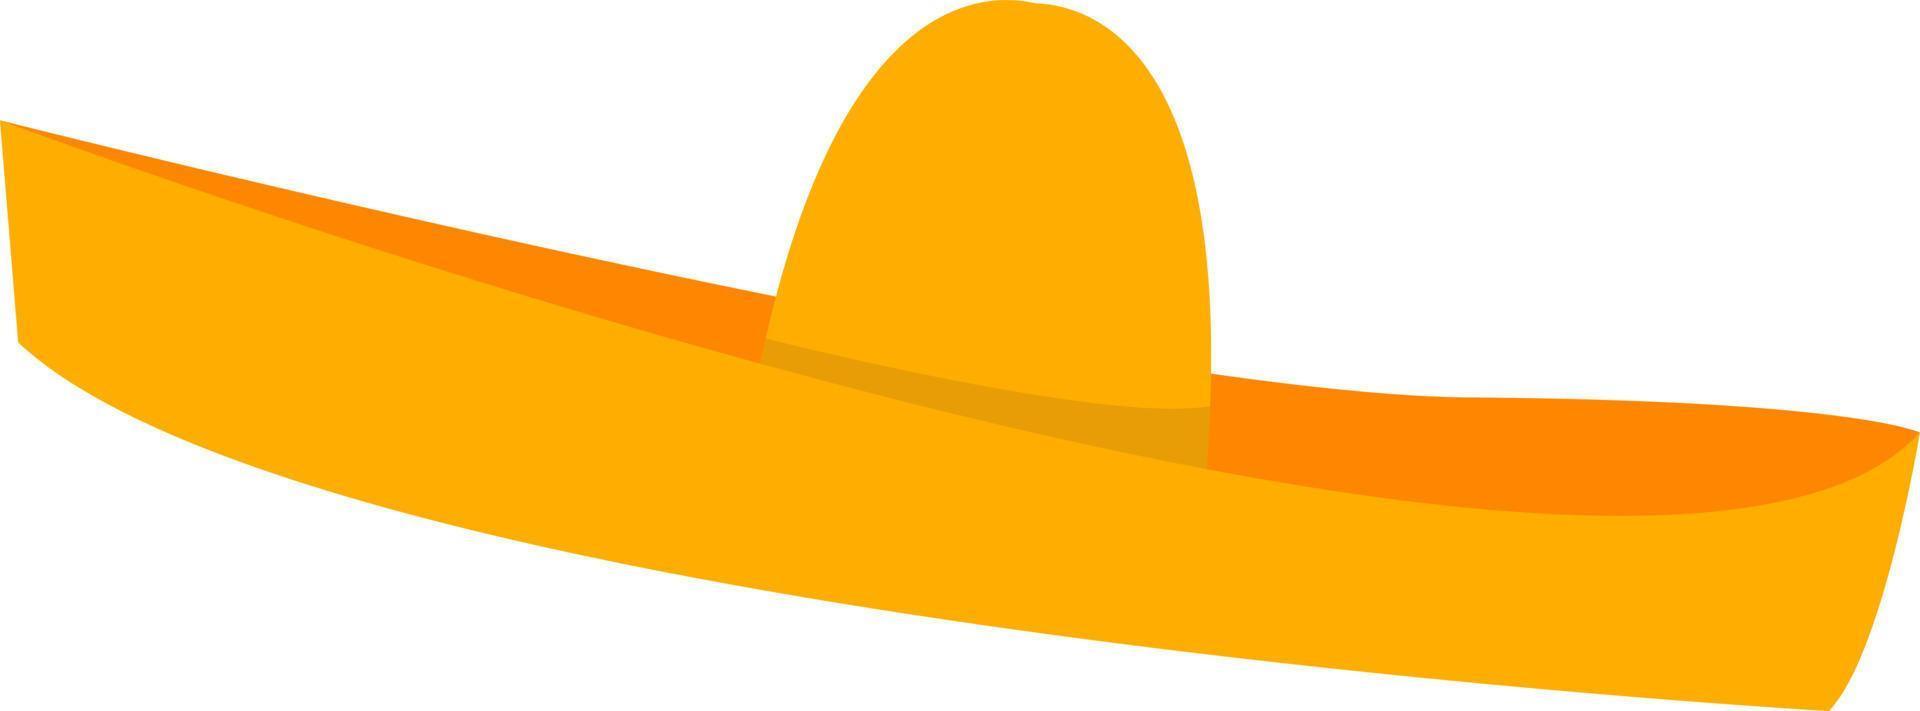 sombrero mexicano, ilustración, vector sobre fondo blanco.